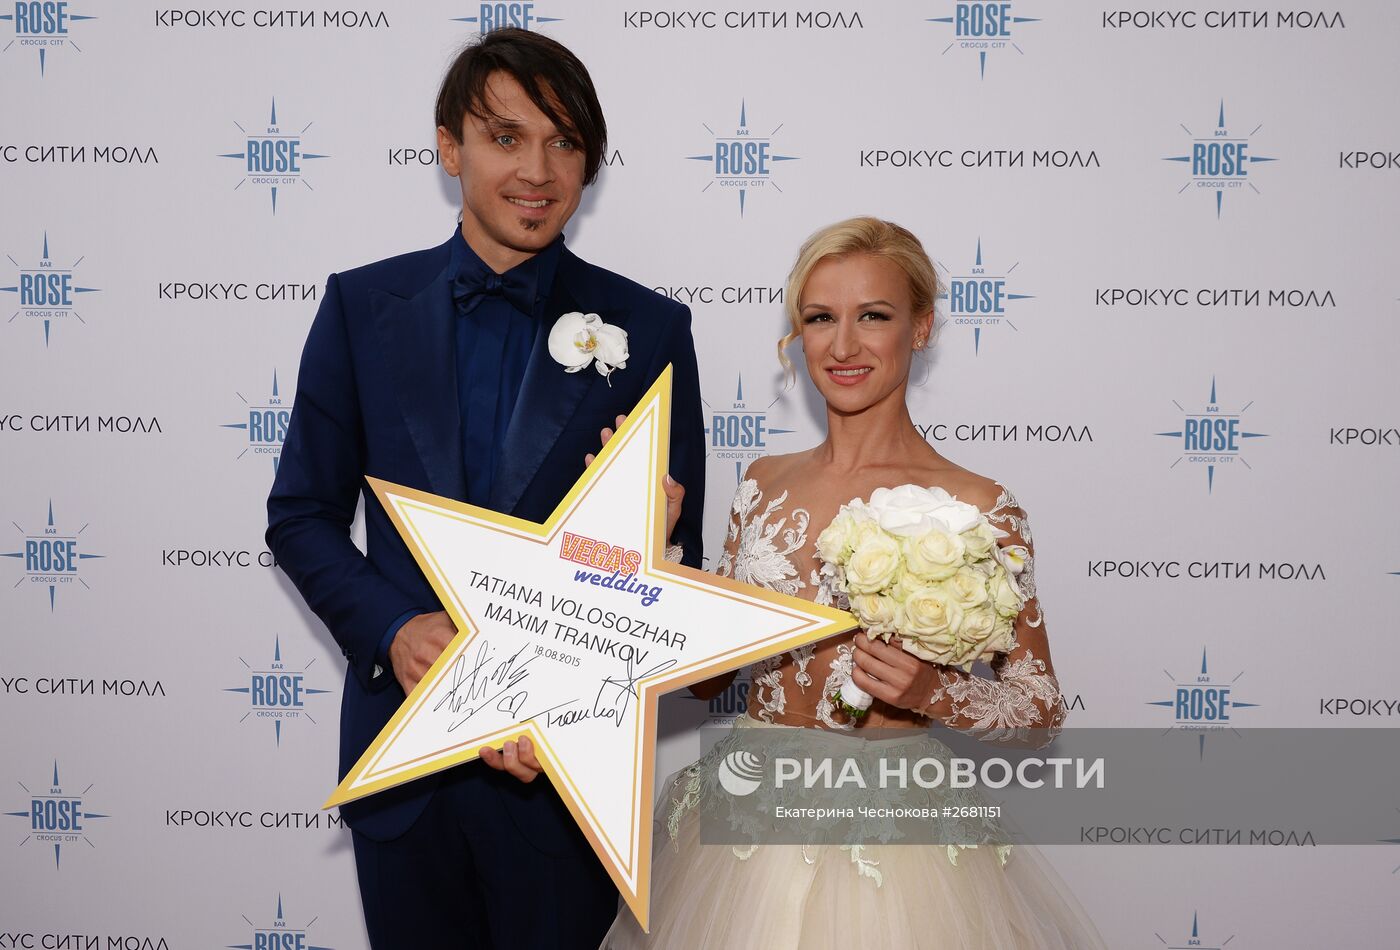 Свадьба фигуристов Максима Транькова и Татьяны Волосожар